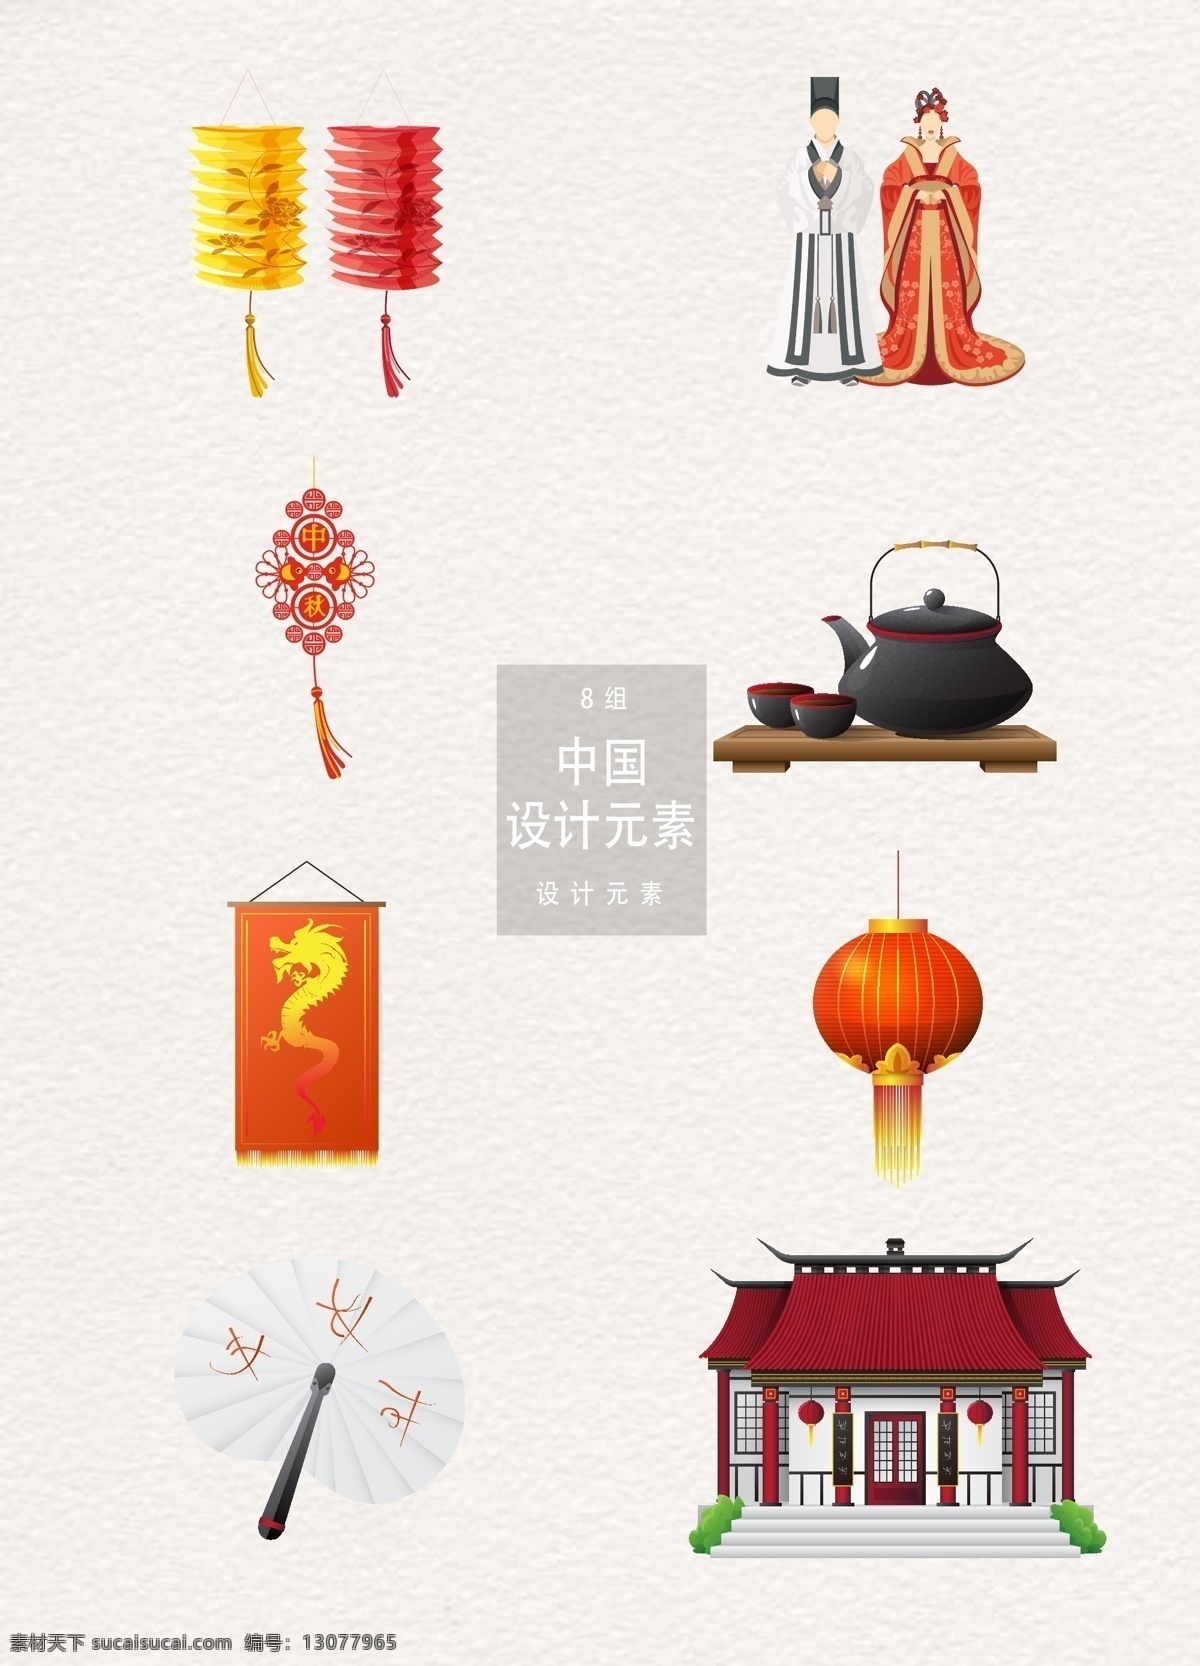 中国 日本 传统 元素 装饰 图案 灯笼 中国结 茶道 茶壶 扇子 日本传统 中国传统元素 装饰图案 茶 中式建筑